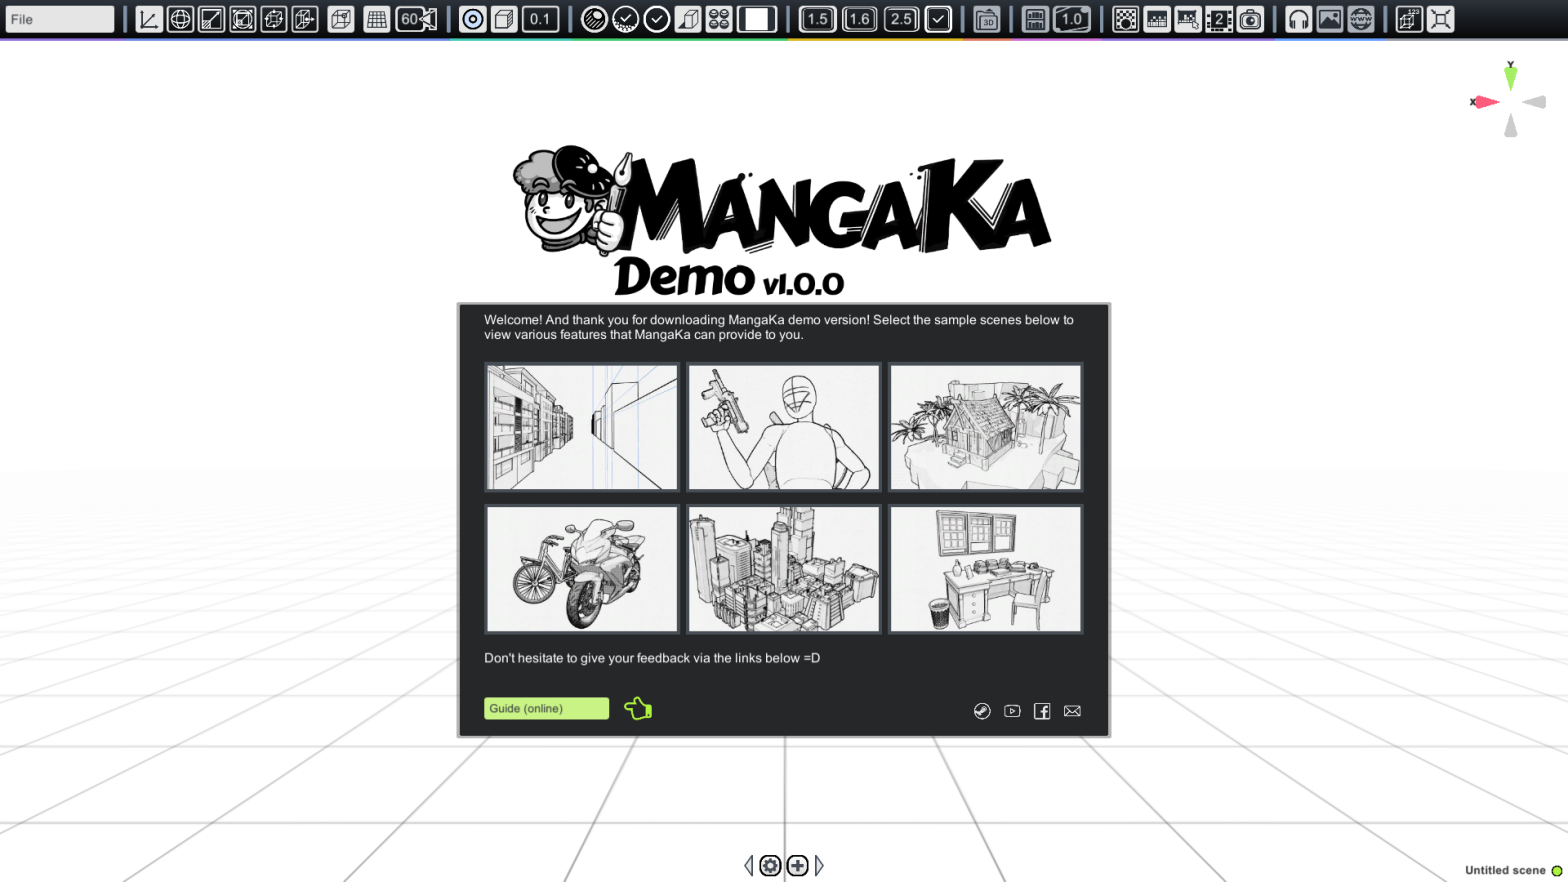 MangaKa Demo Version on Steam!